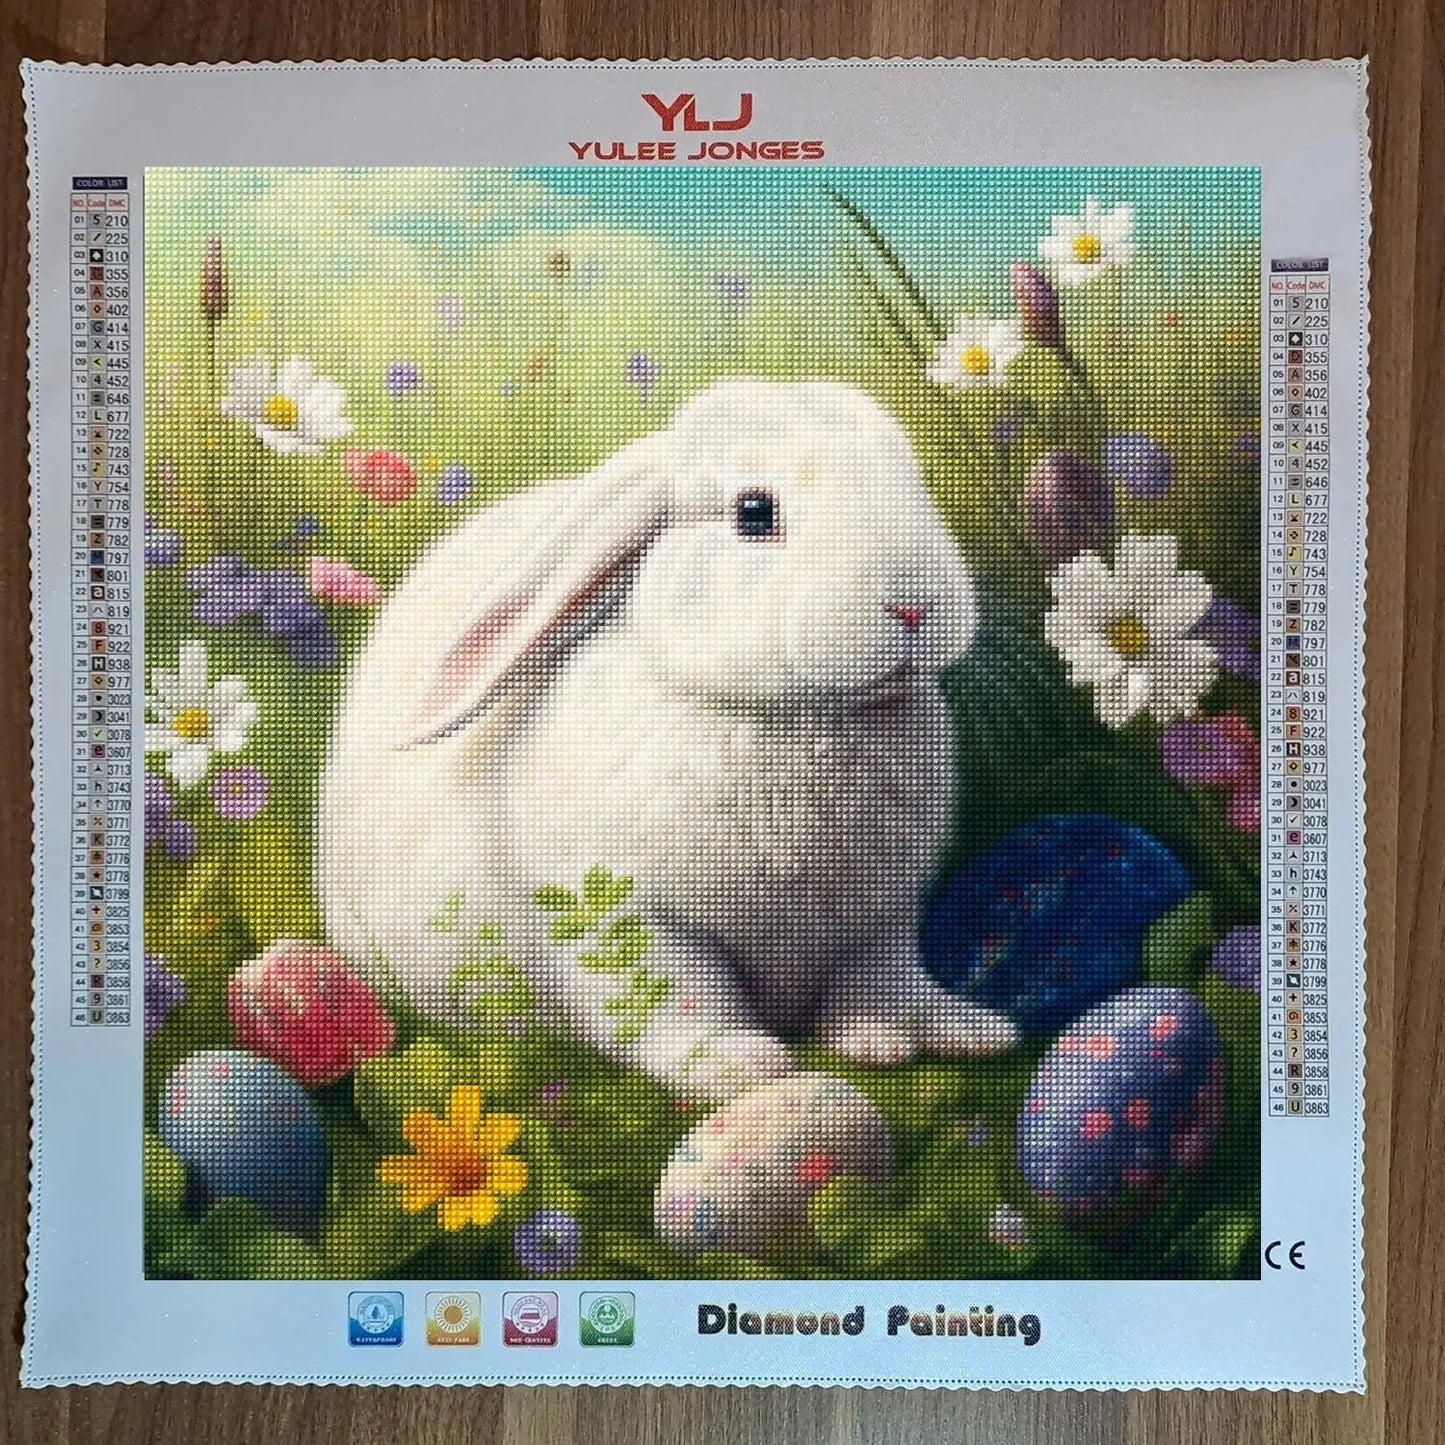 "Easter Bunny" - Full Drill Diamond Painting Kit - YLJ Art Shop - YuLee Jonges